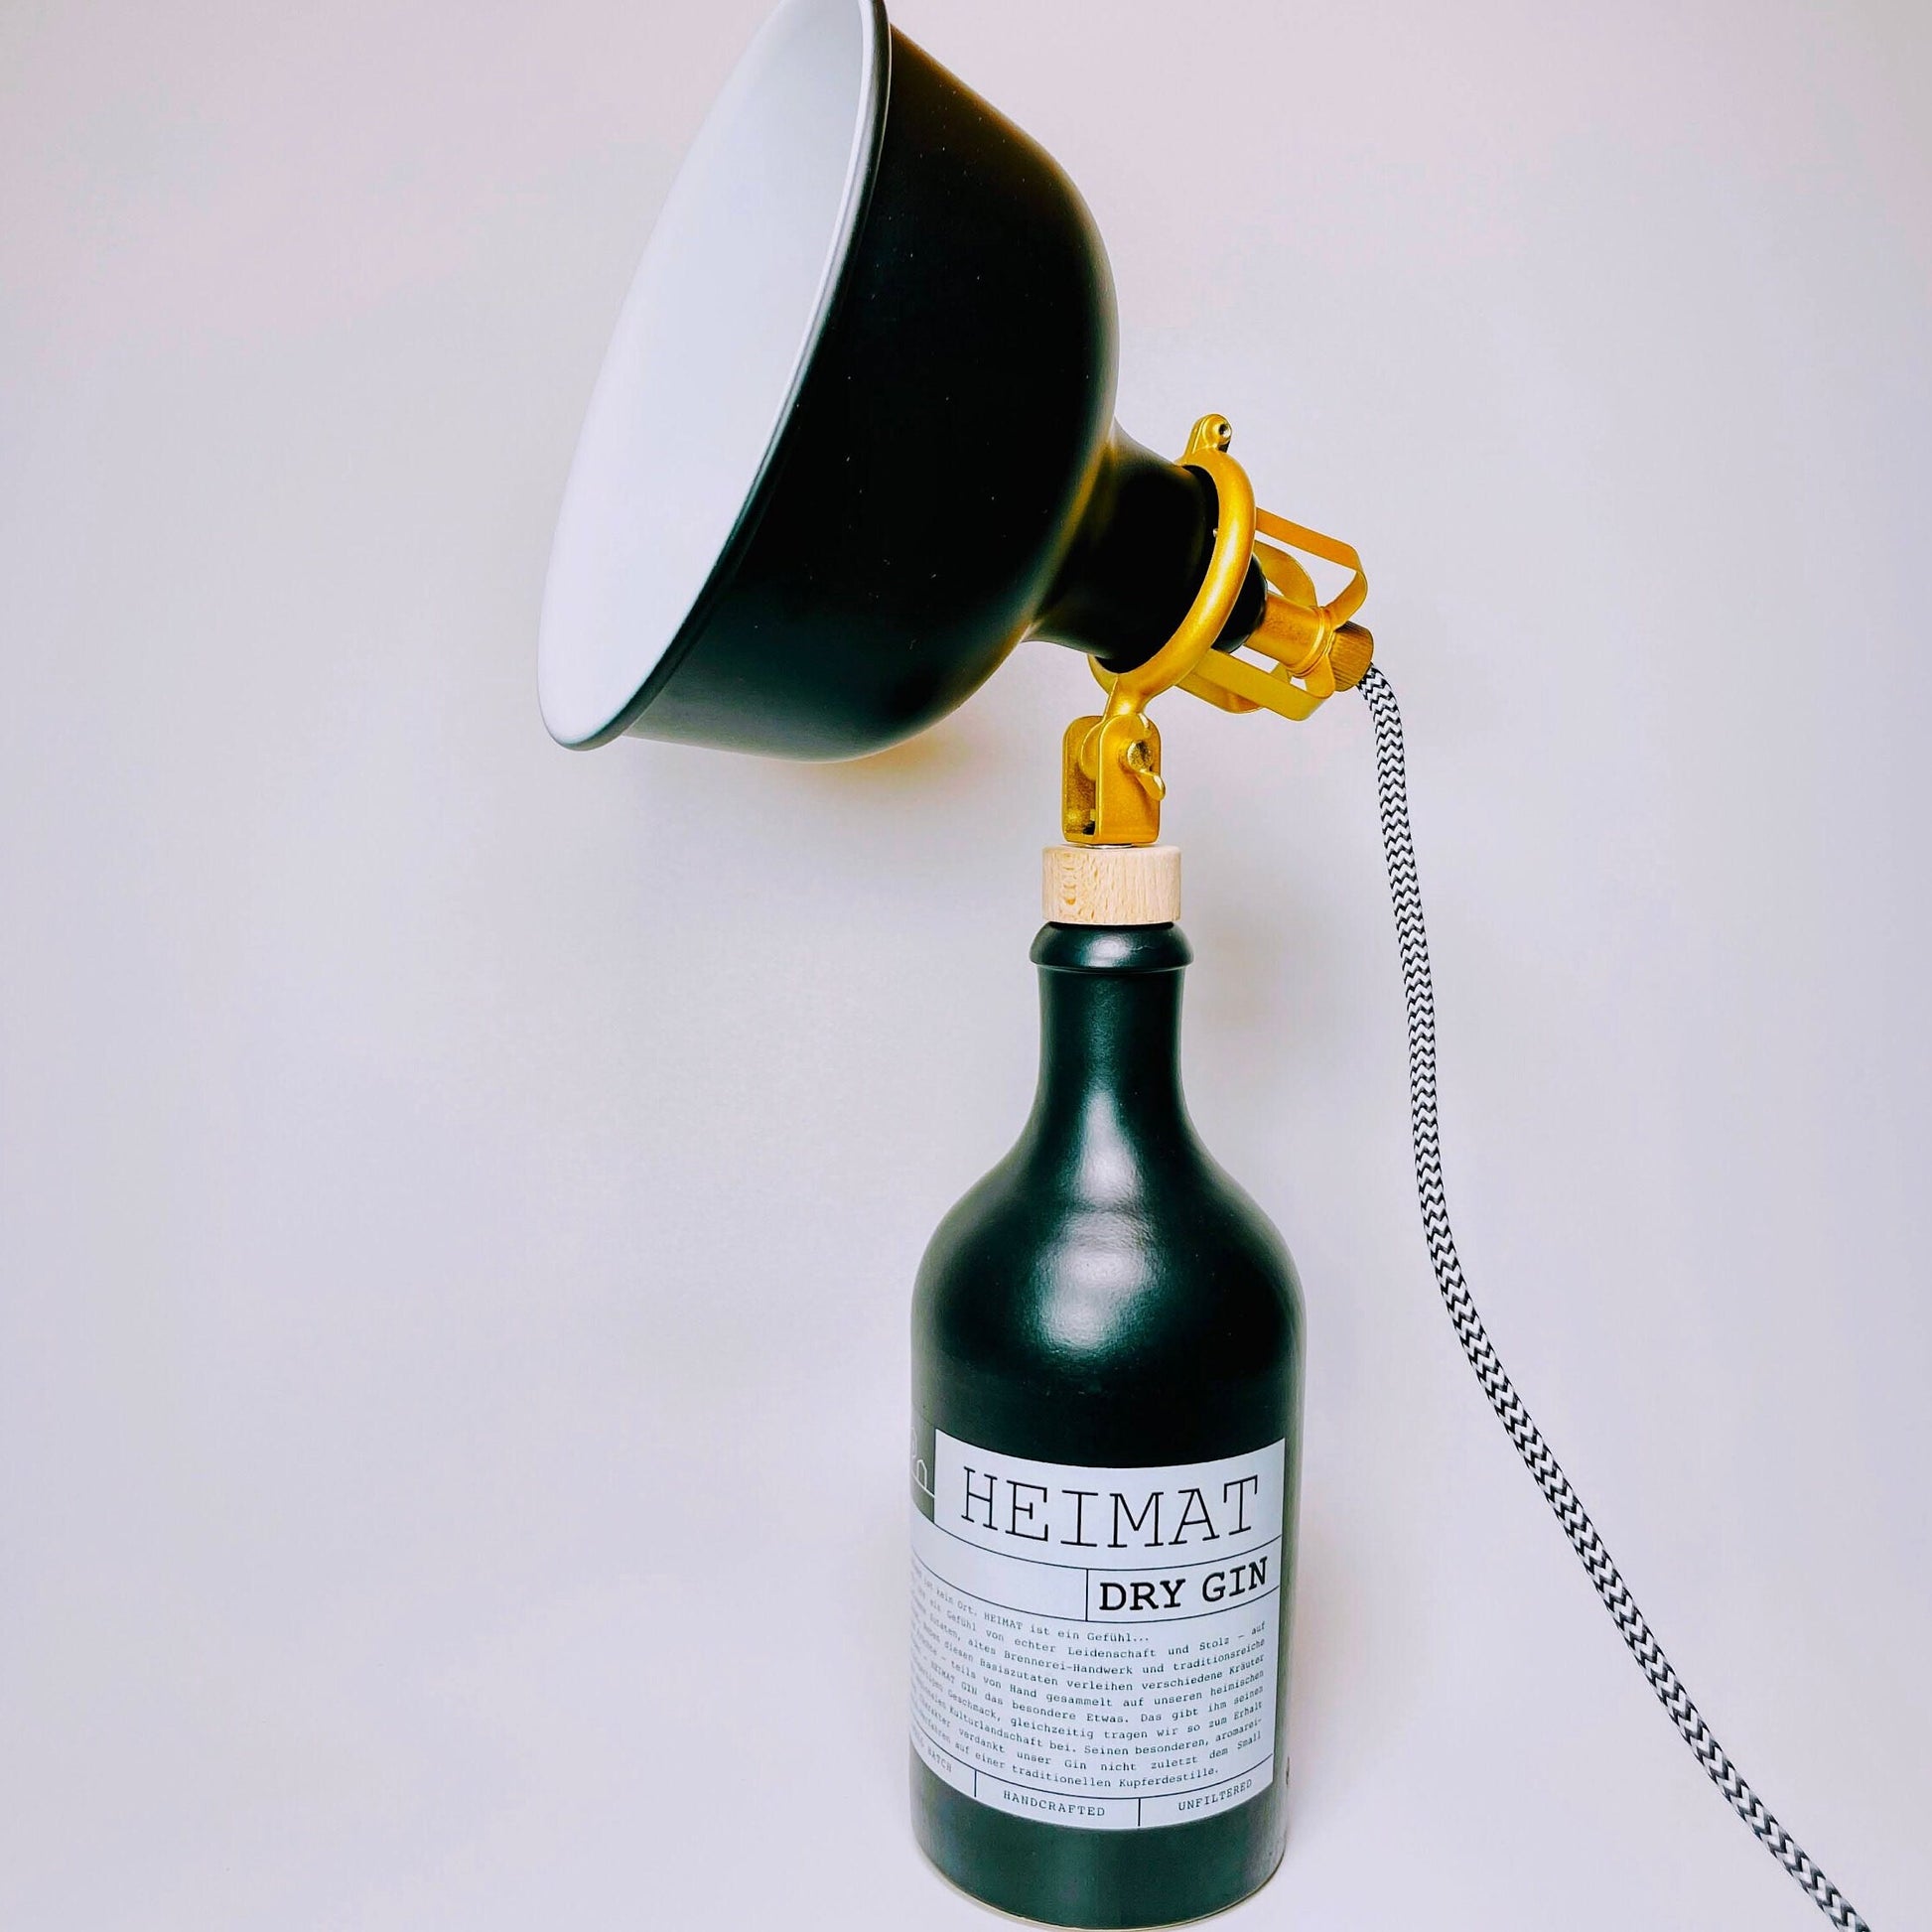 Heimat Gin Vintage-Lampe | Handgemachte nachhaltige Tischlampe aus Heimat Gin | Einzigartige Geschenkidee | Deko-Licht | Upcycling Leuchte